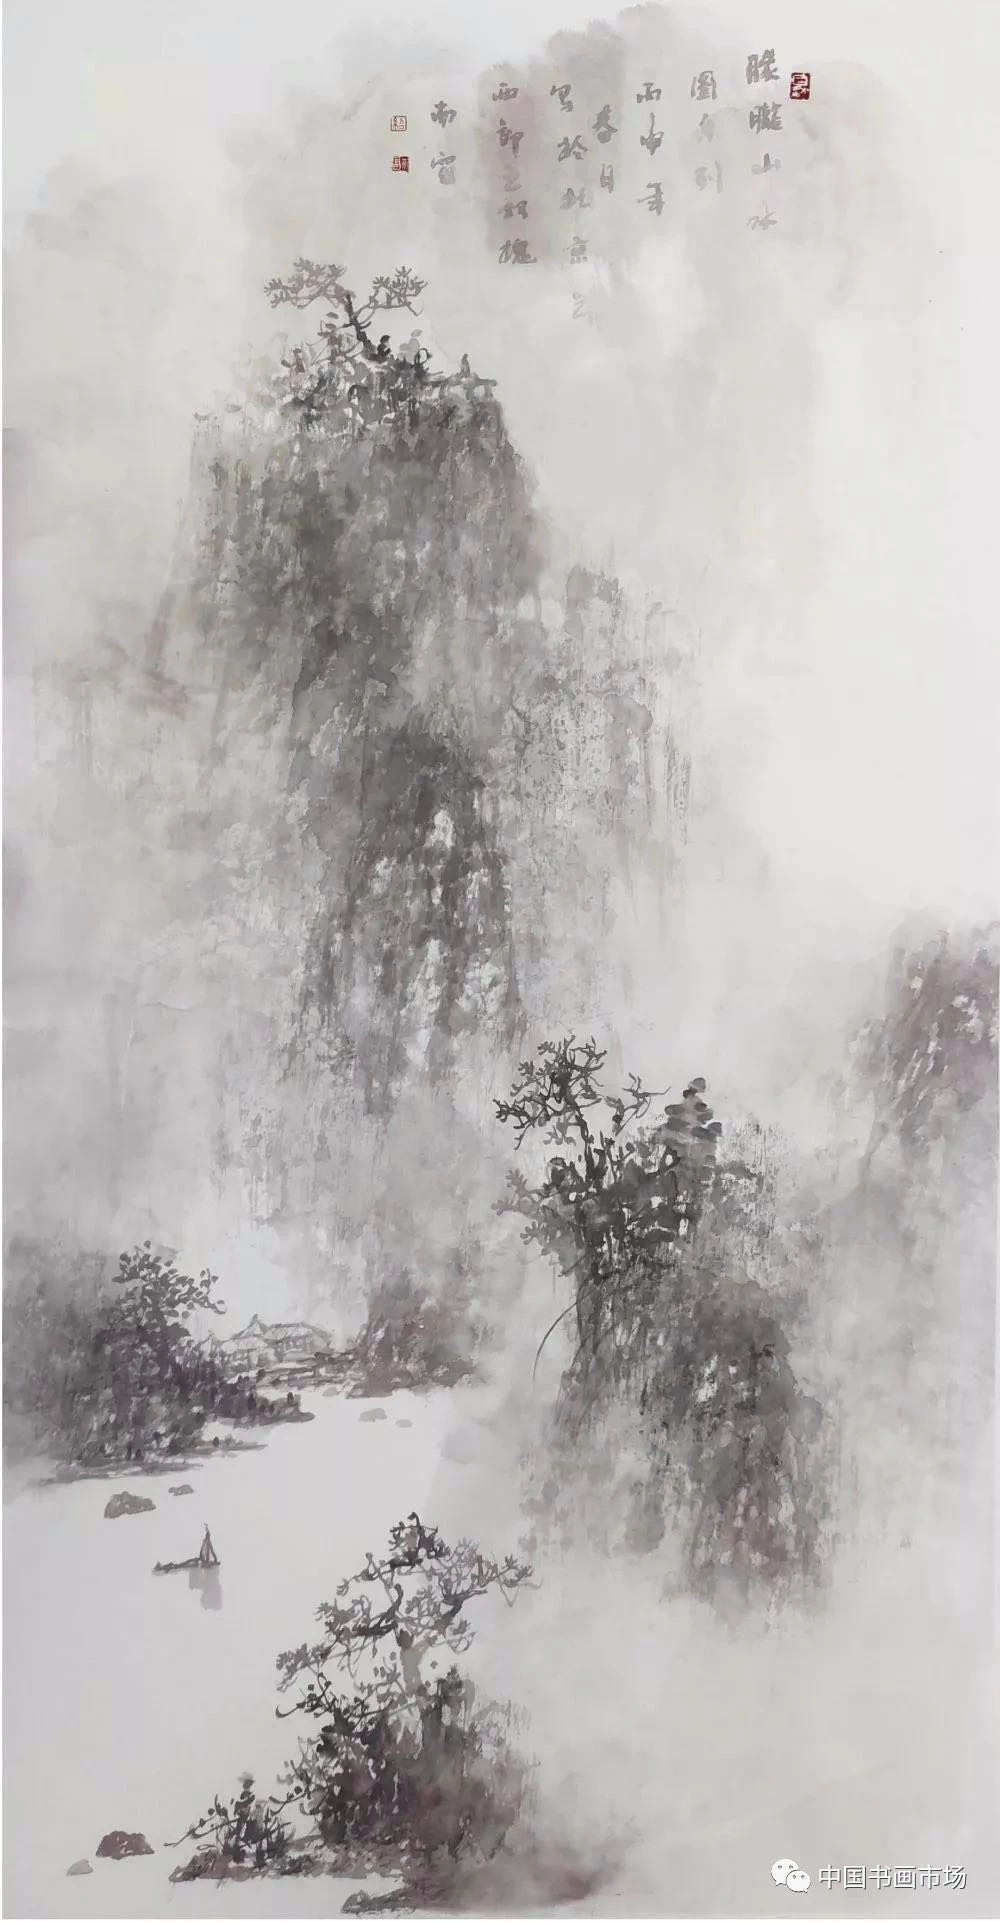 吕绍福:朦胧山水画的创作思考